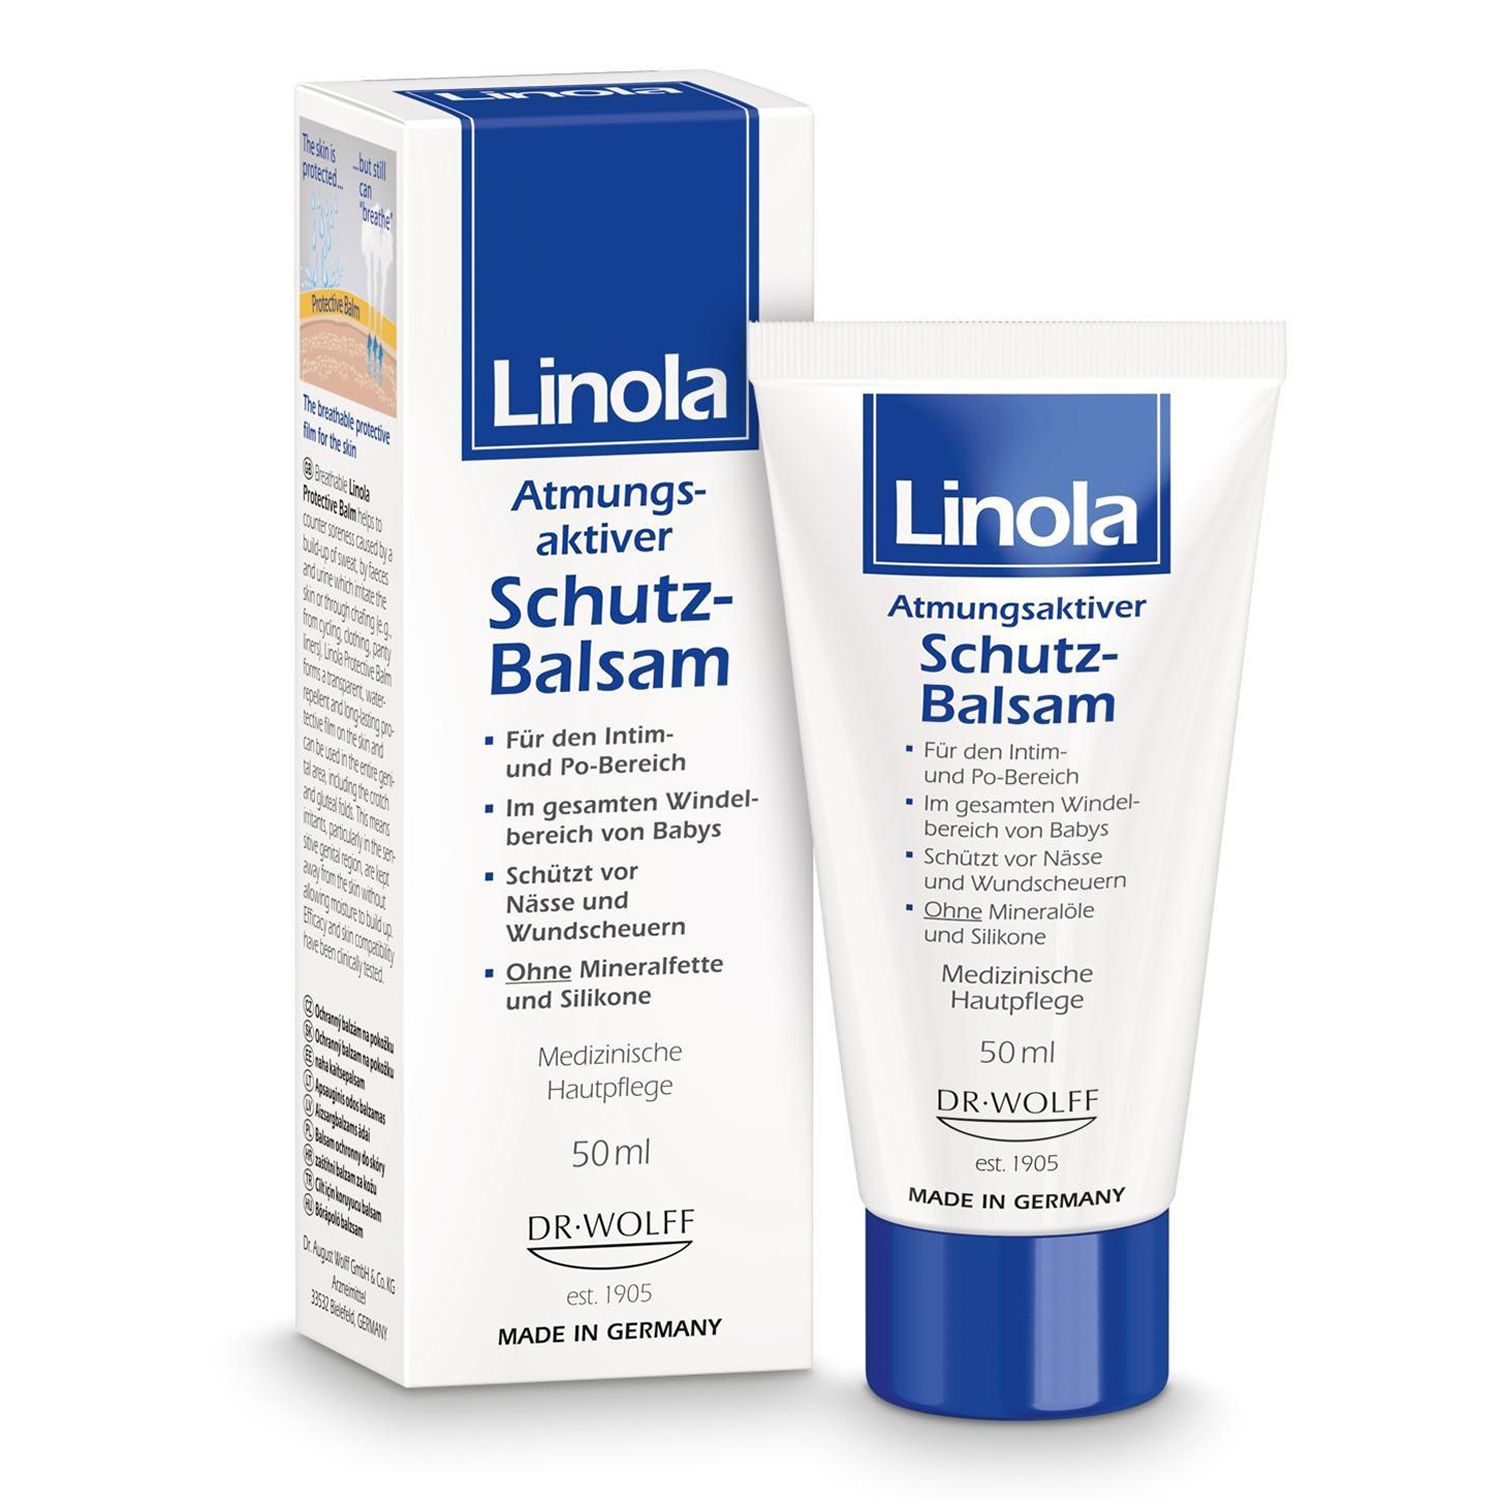 Linola Schutz-Balsam - Wundschutzcreme bei Hautwolf oder gereizter Haut